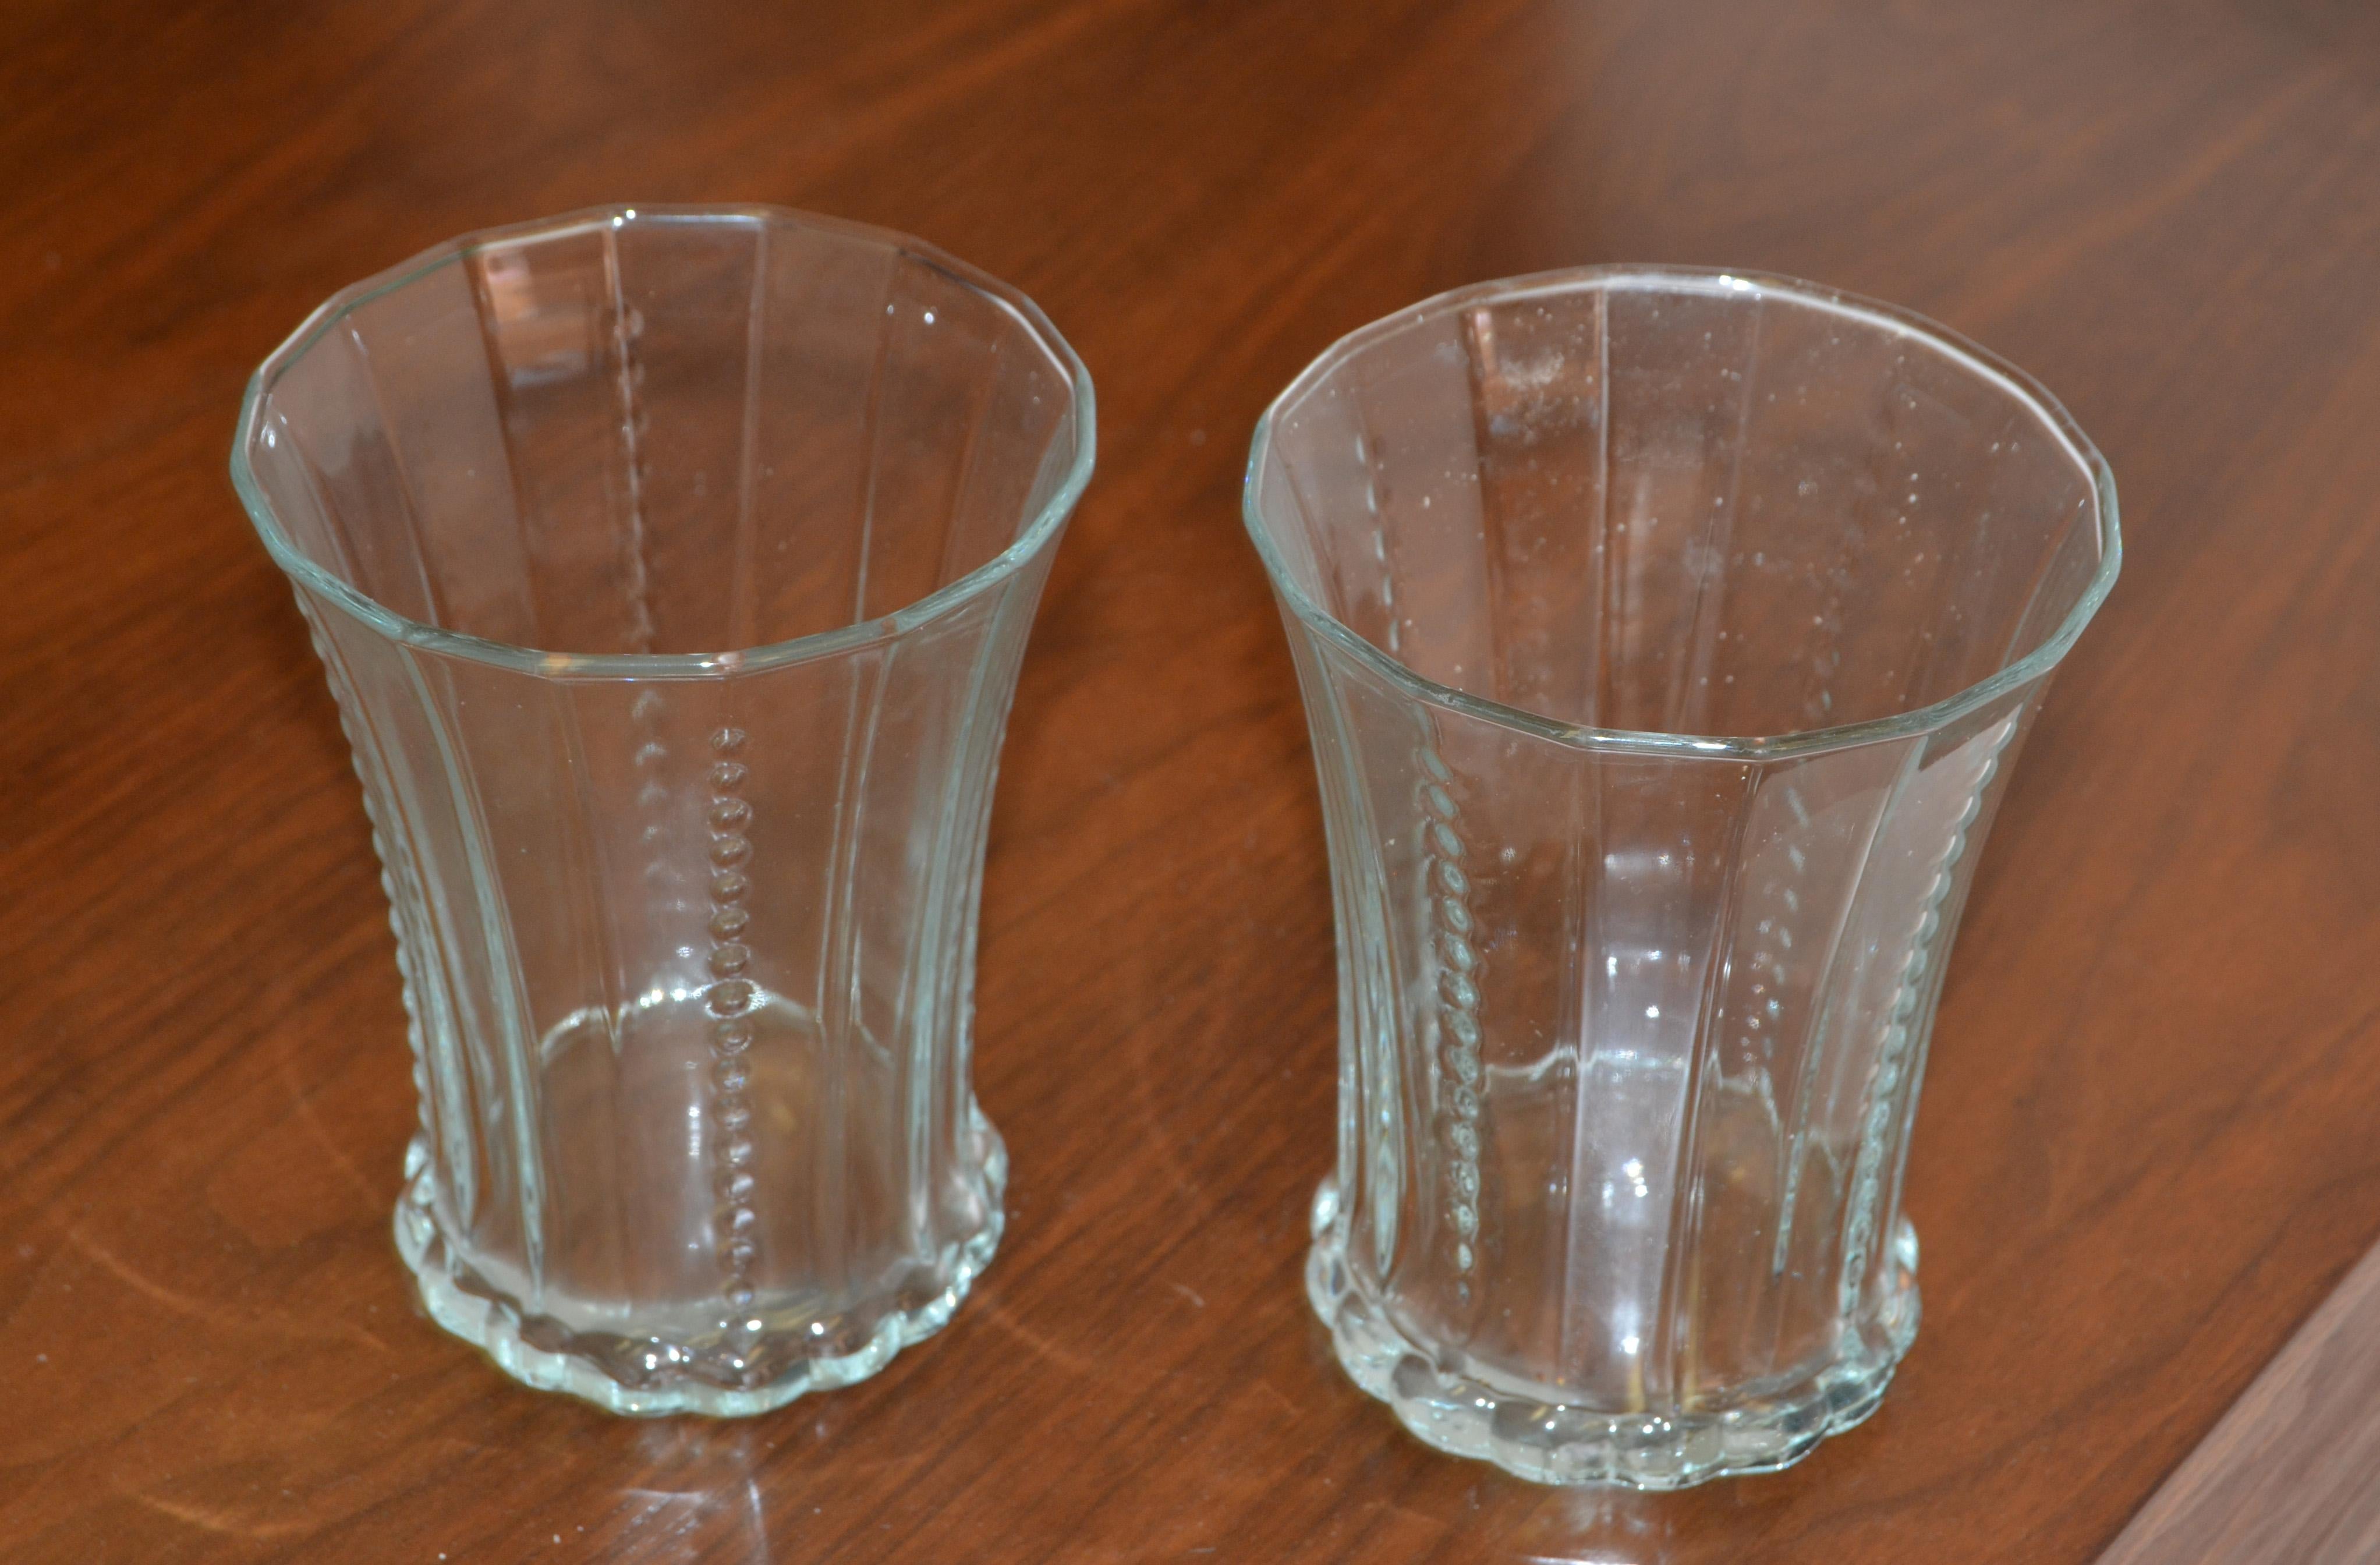 Satz von 12 Mid-Century Modern schweren geblasenen Blase Glas Trinkgläser, Glaswaren, Stielgläser in Italien hergestellt.
In ausgezeichnetem Zustand.
   